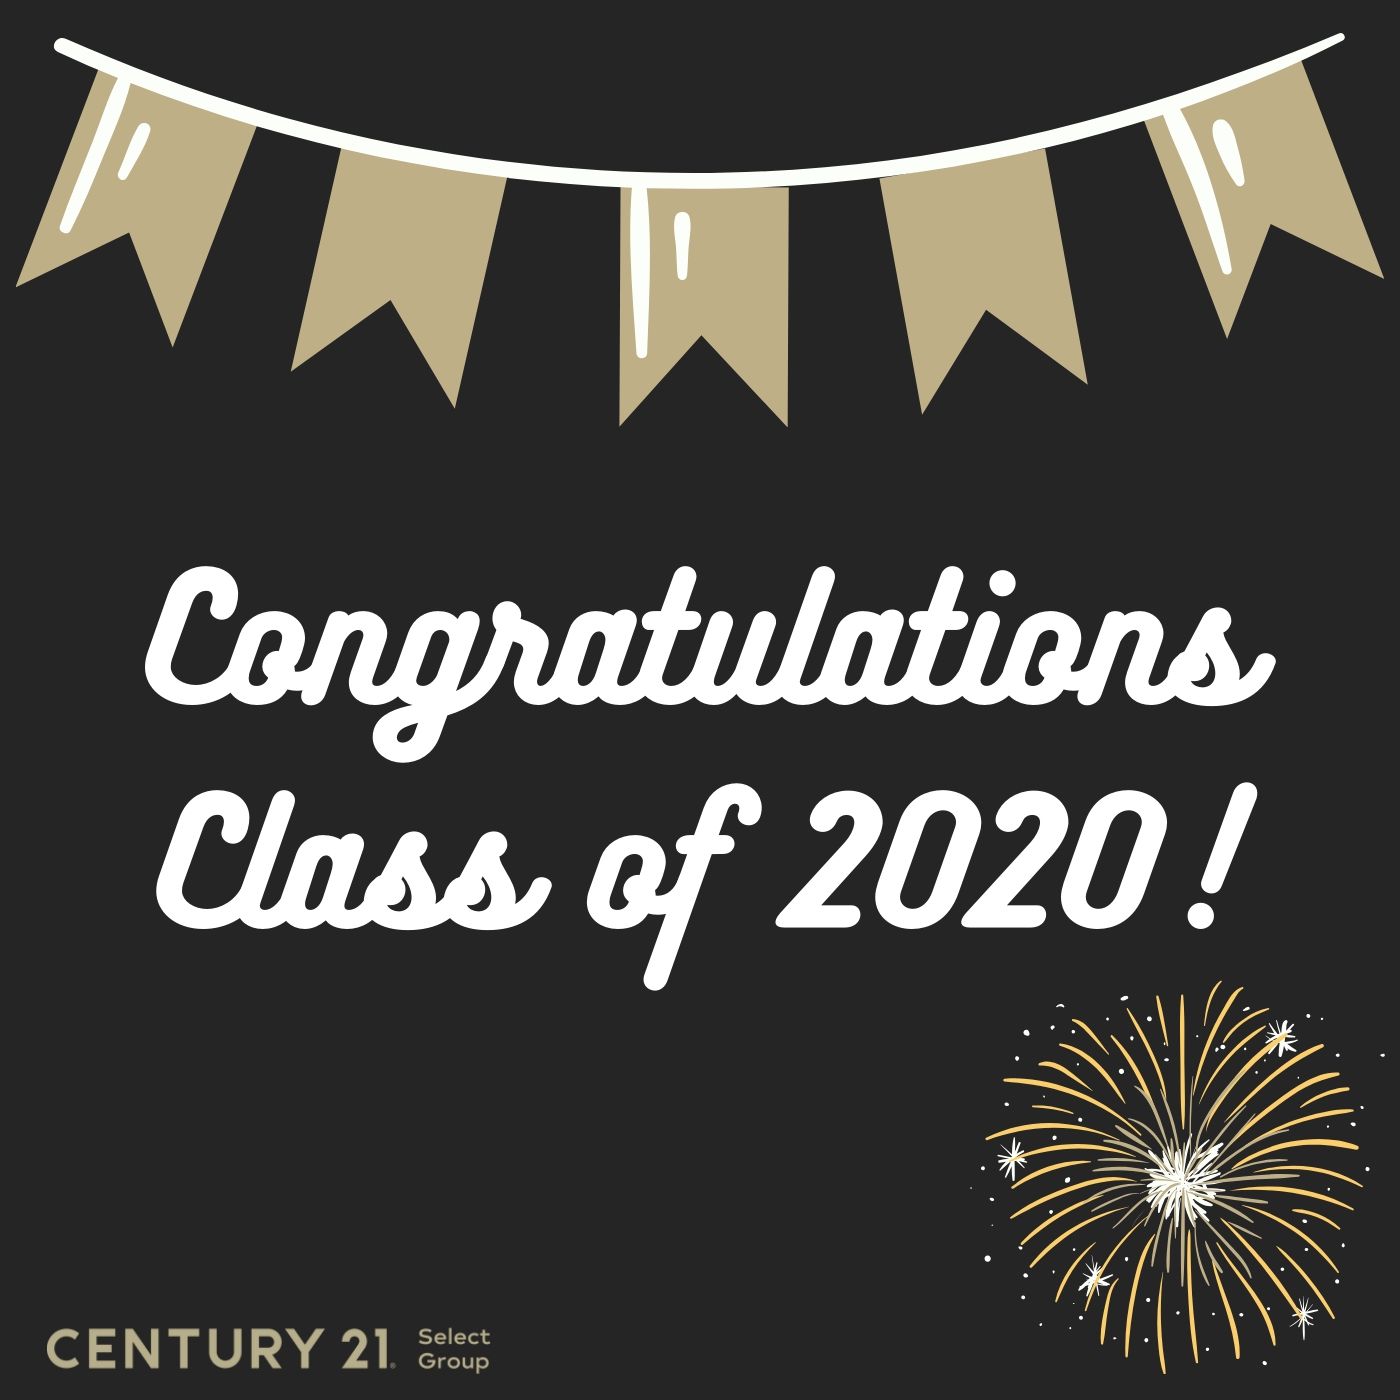 Congratulations Graduating Class of 2020!